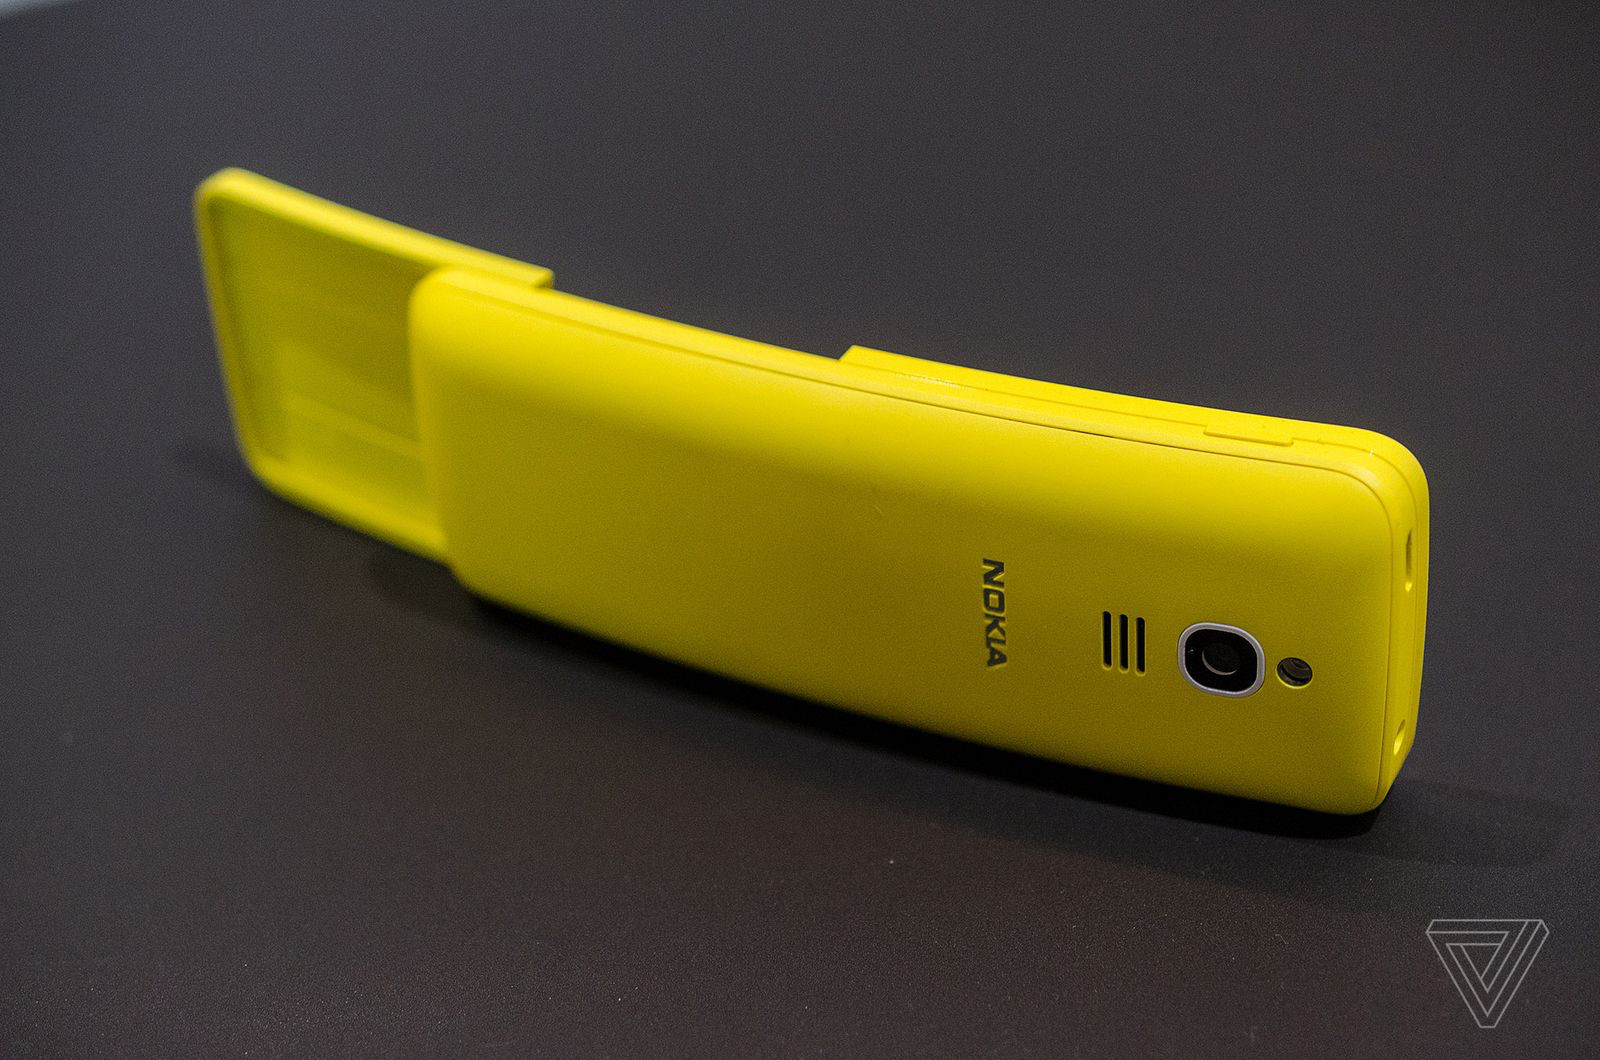 Стартовали продажи кнопочного культового телефона "Банан" Nokia 8110 4G